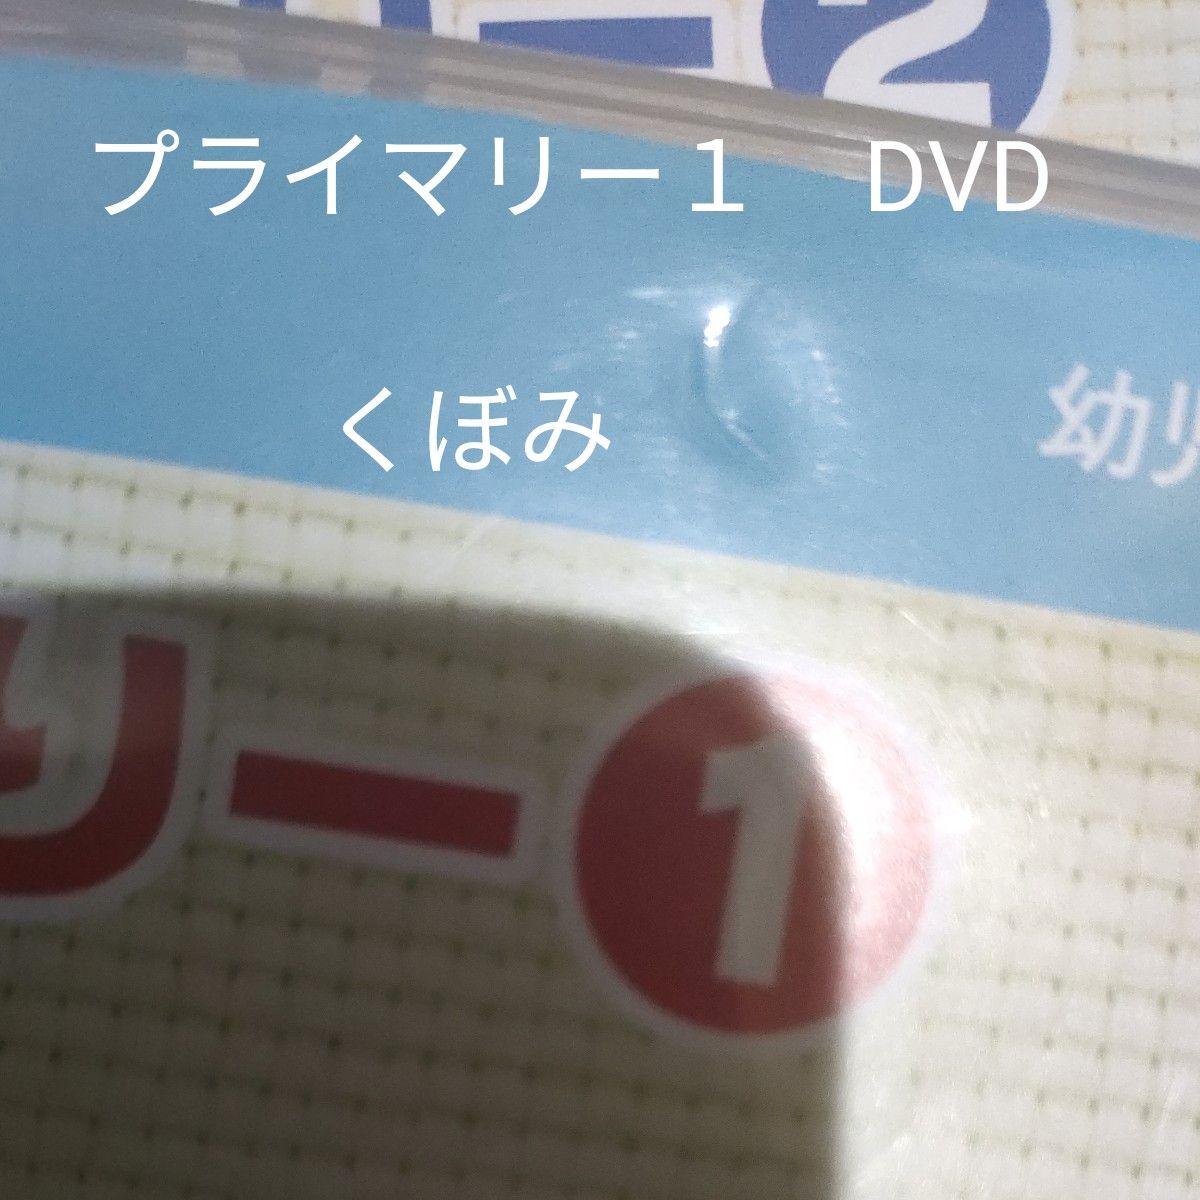 ヤマハ音楽教室 ぷらいまりー1と2  CD+DVDセット